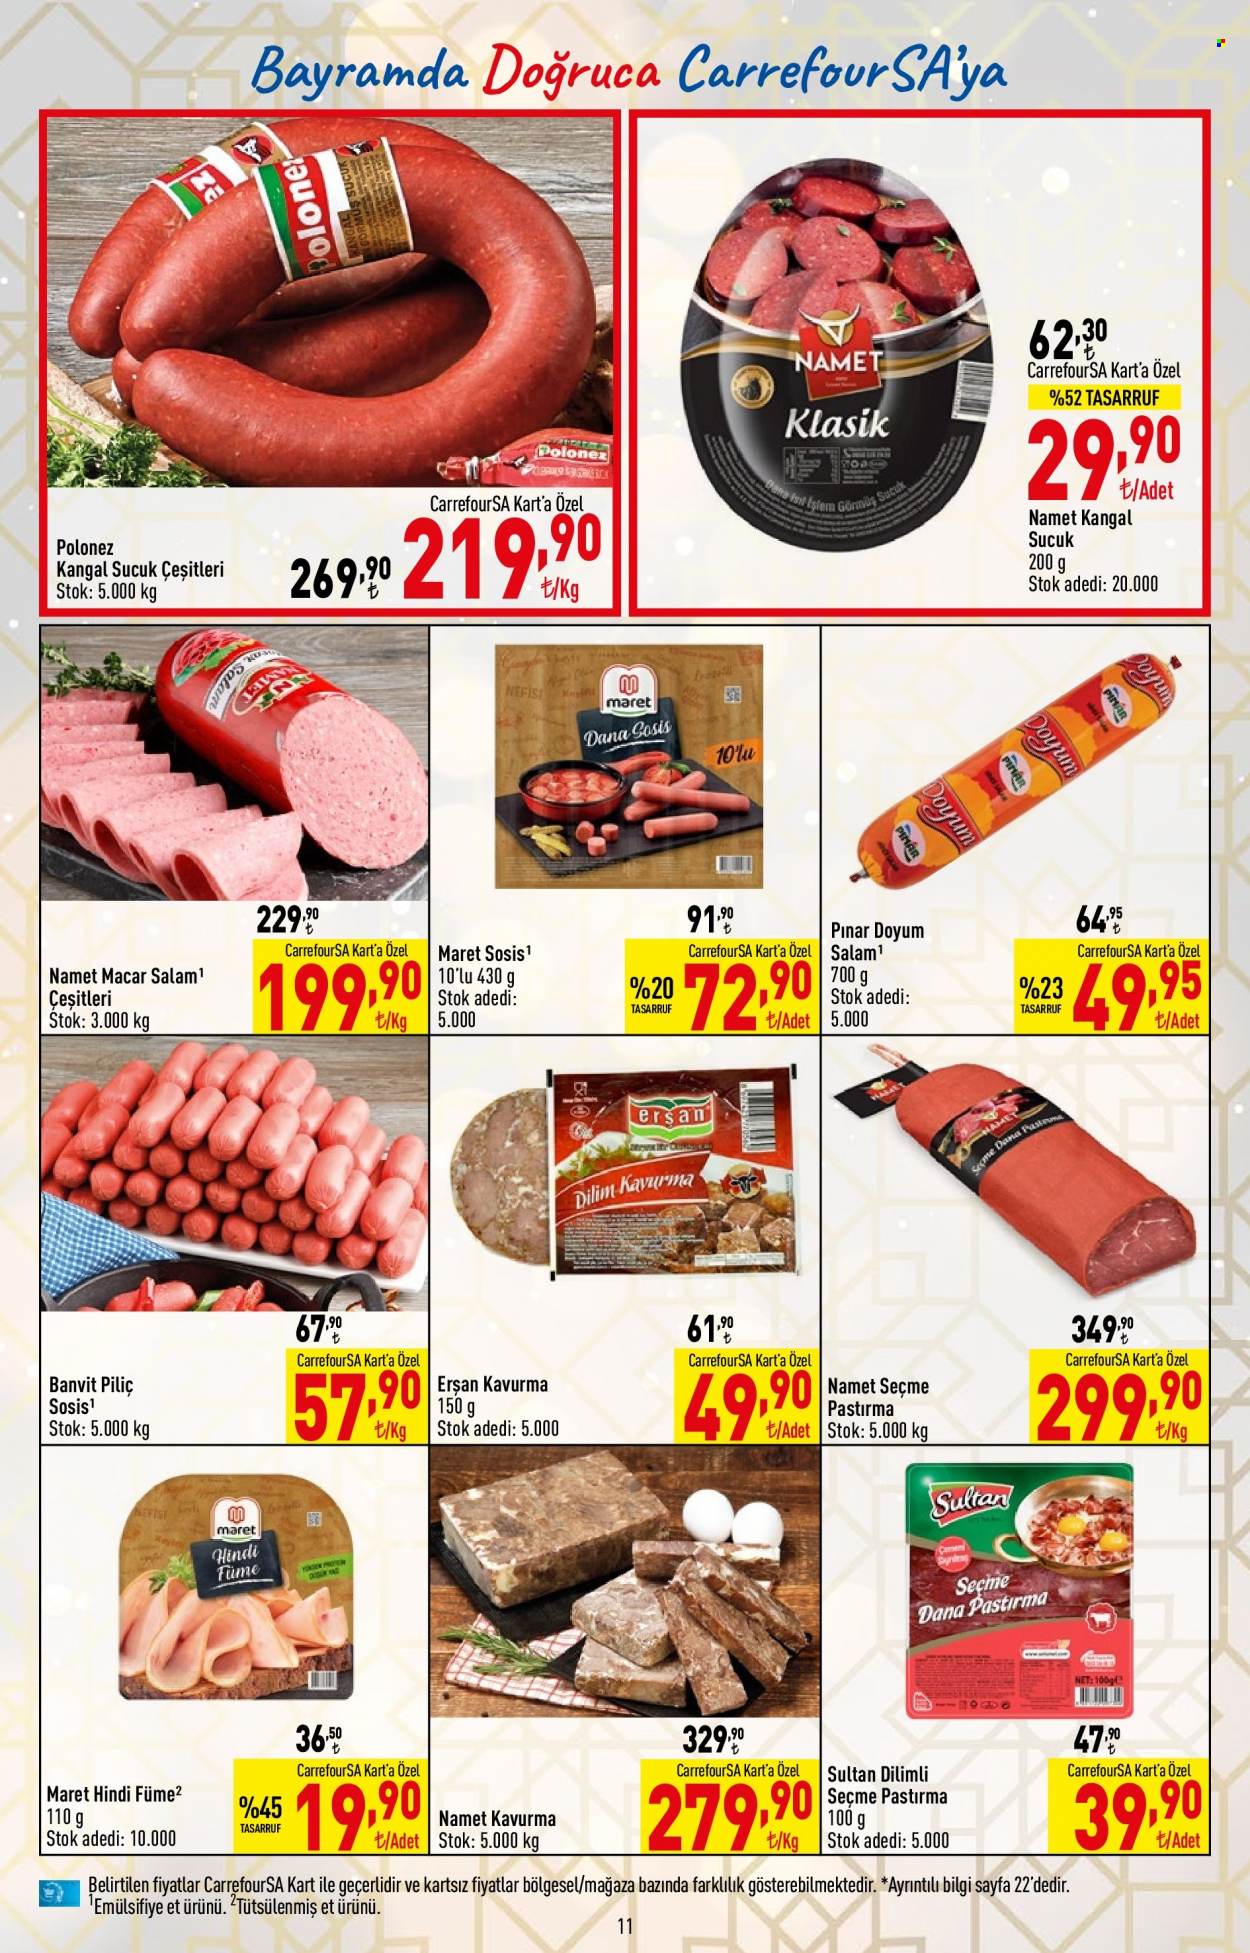 thumbnail - Carrefour Hiper aktüel ürünler, broşür  - 6.30.2022 - 7.13.2022 - Satıştaki ürünler - piliç, Pınar, kavurma, seçme pastırma, pastırma, Polonez, kangal sucuk, Fermente Kangal Sucuk, sucuk. Sayfa 11.